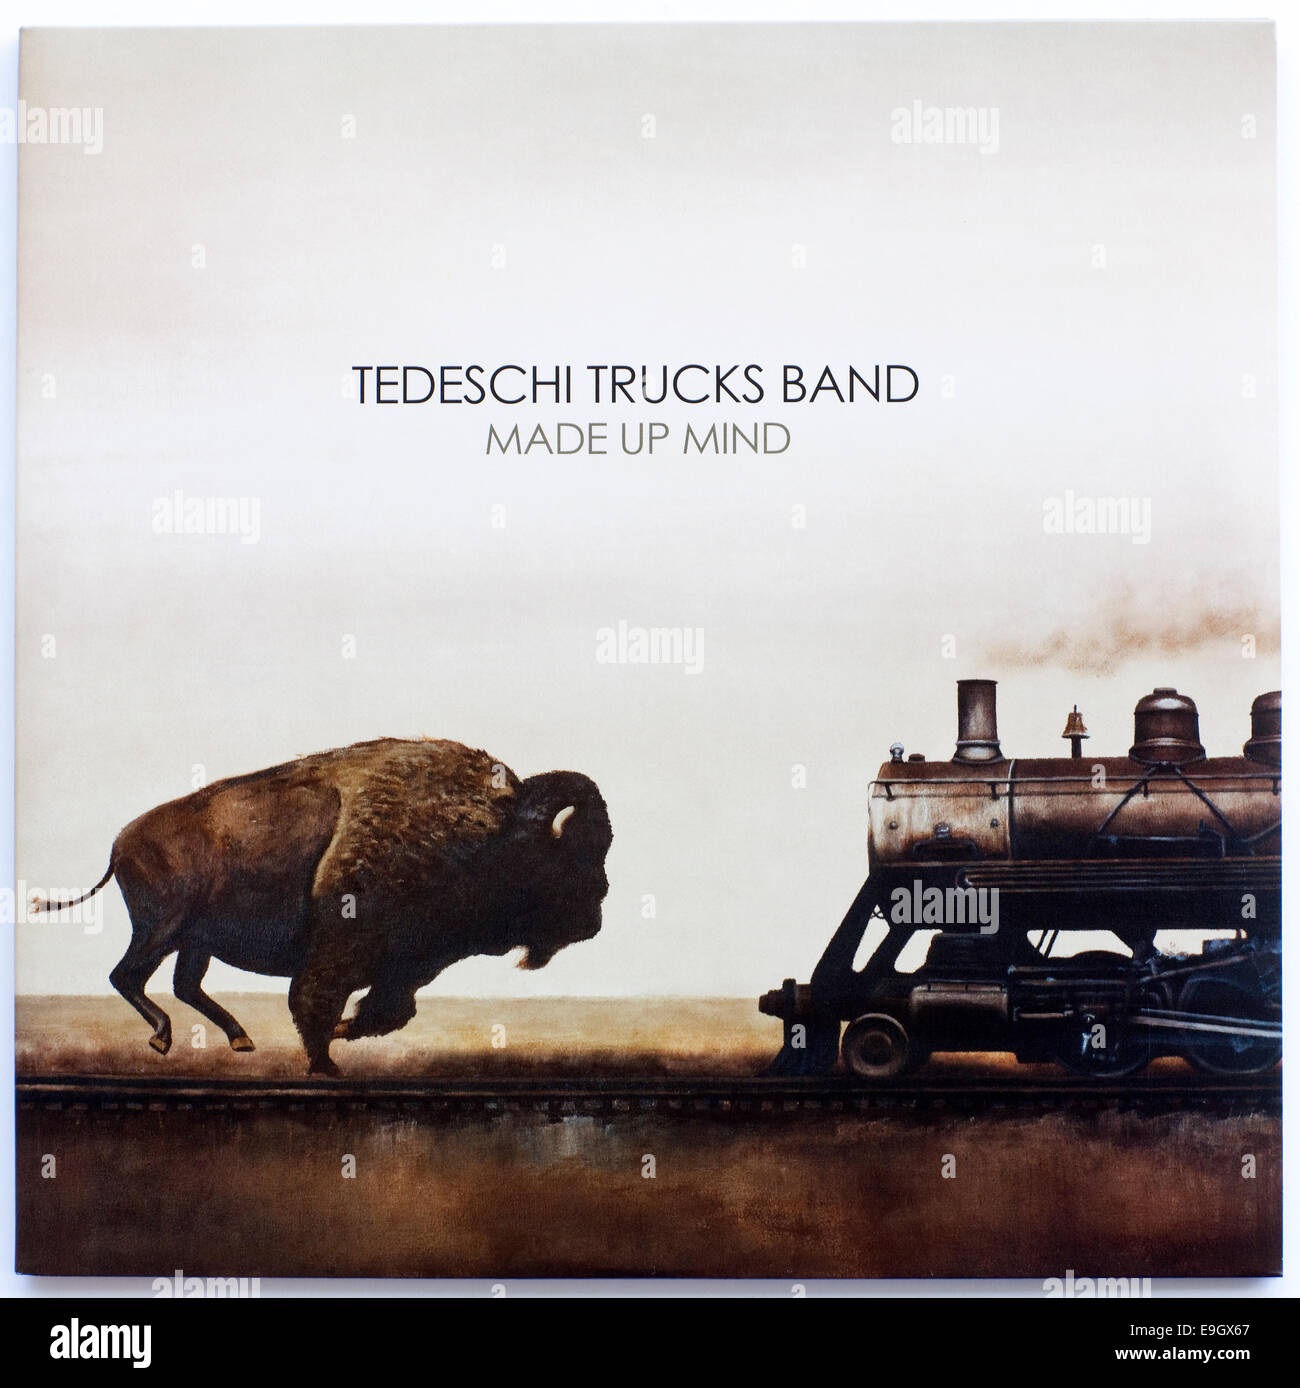 Cover Art For Tedeschi Trucks Band Made Up Mind 2013 Vinyl Album On 